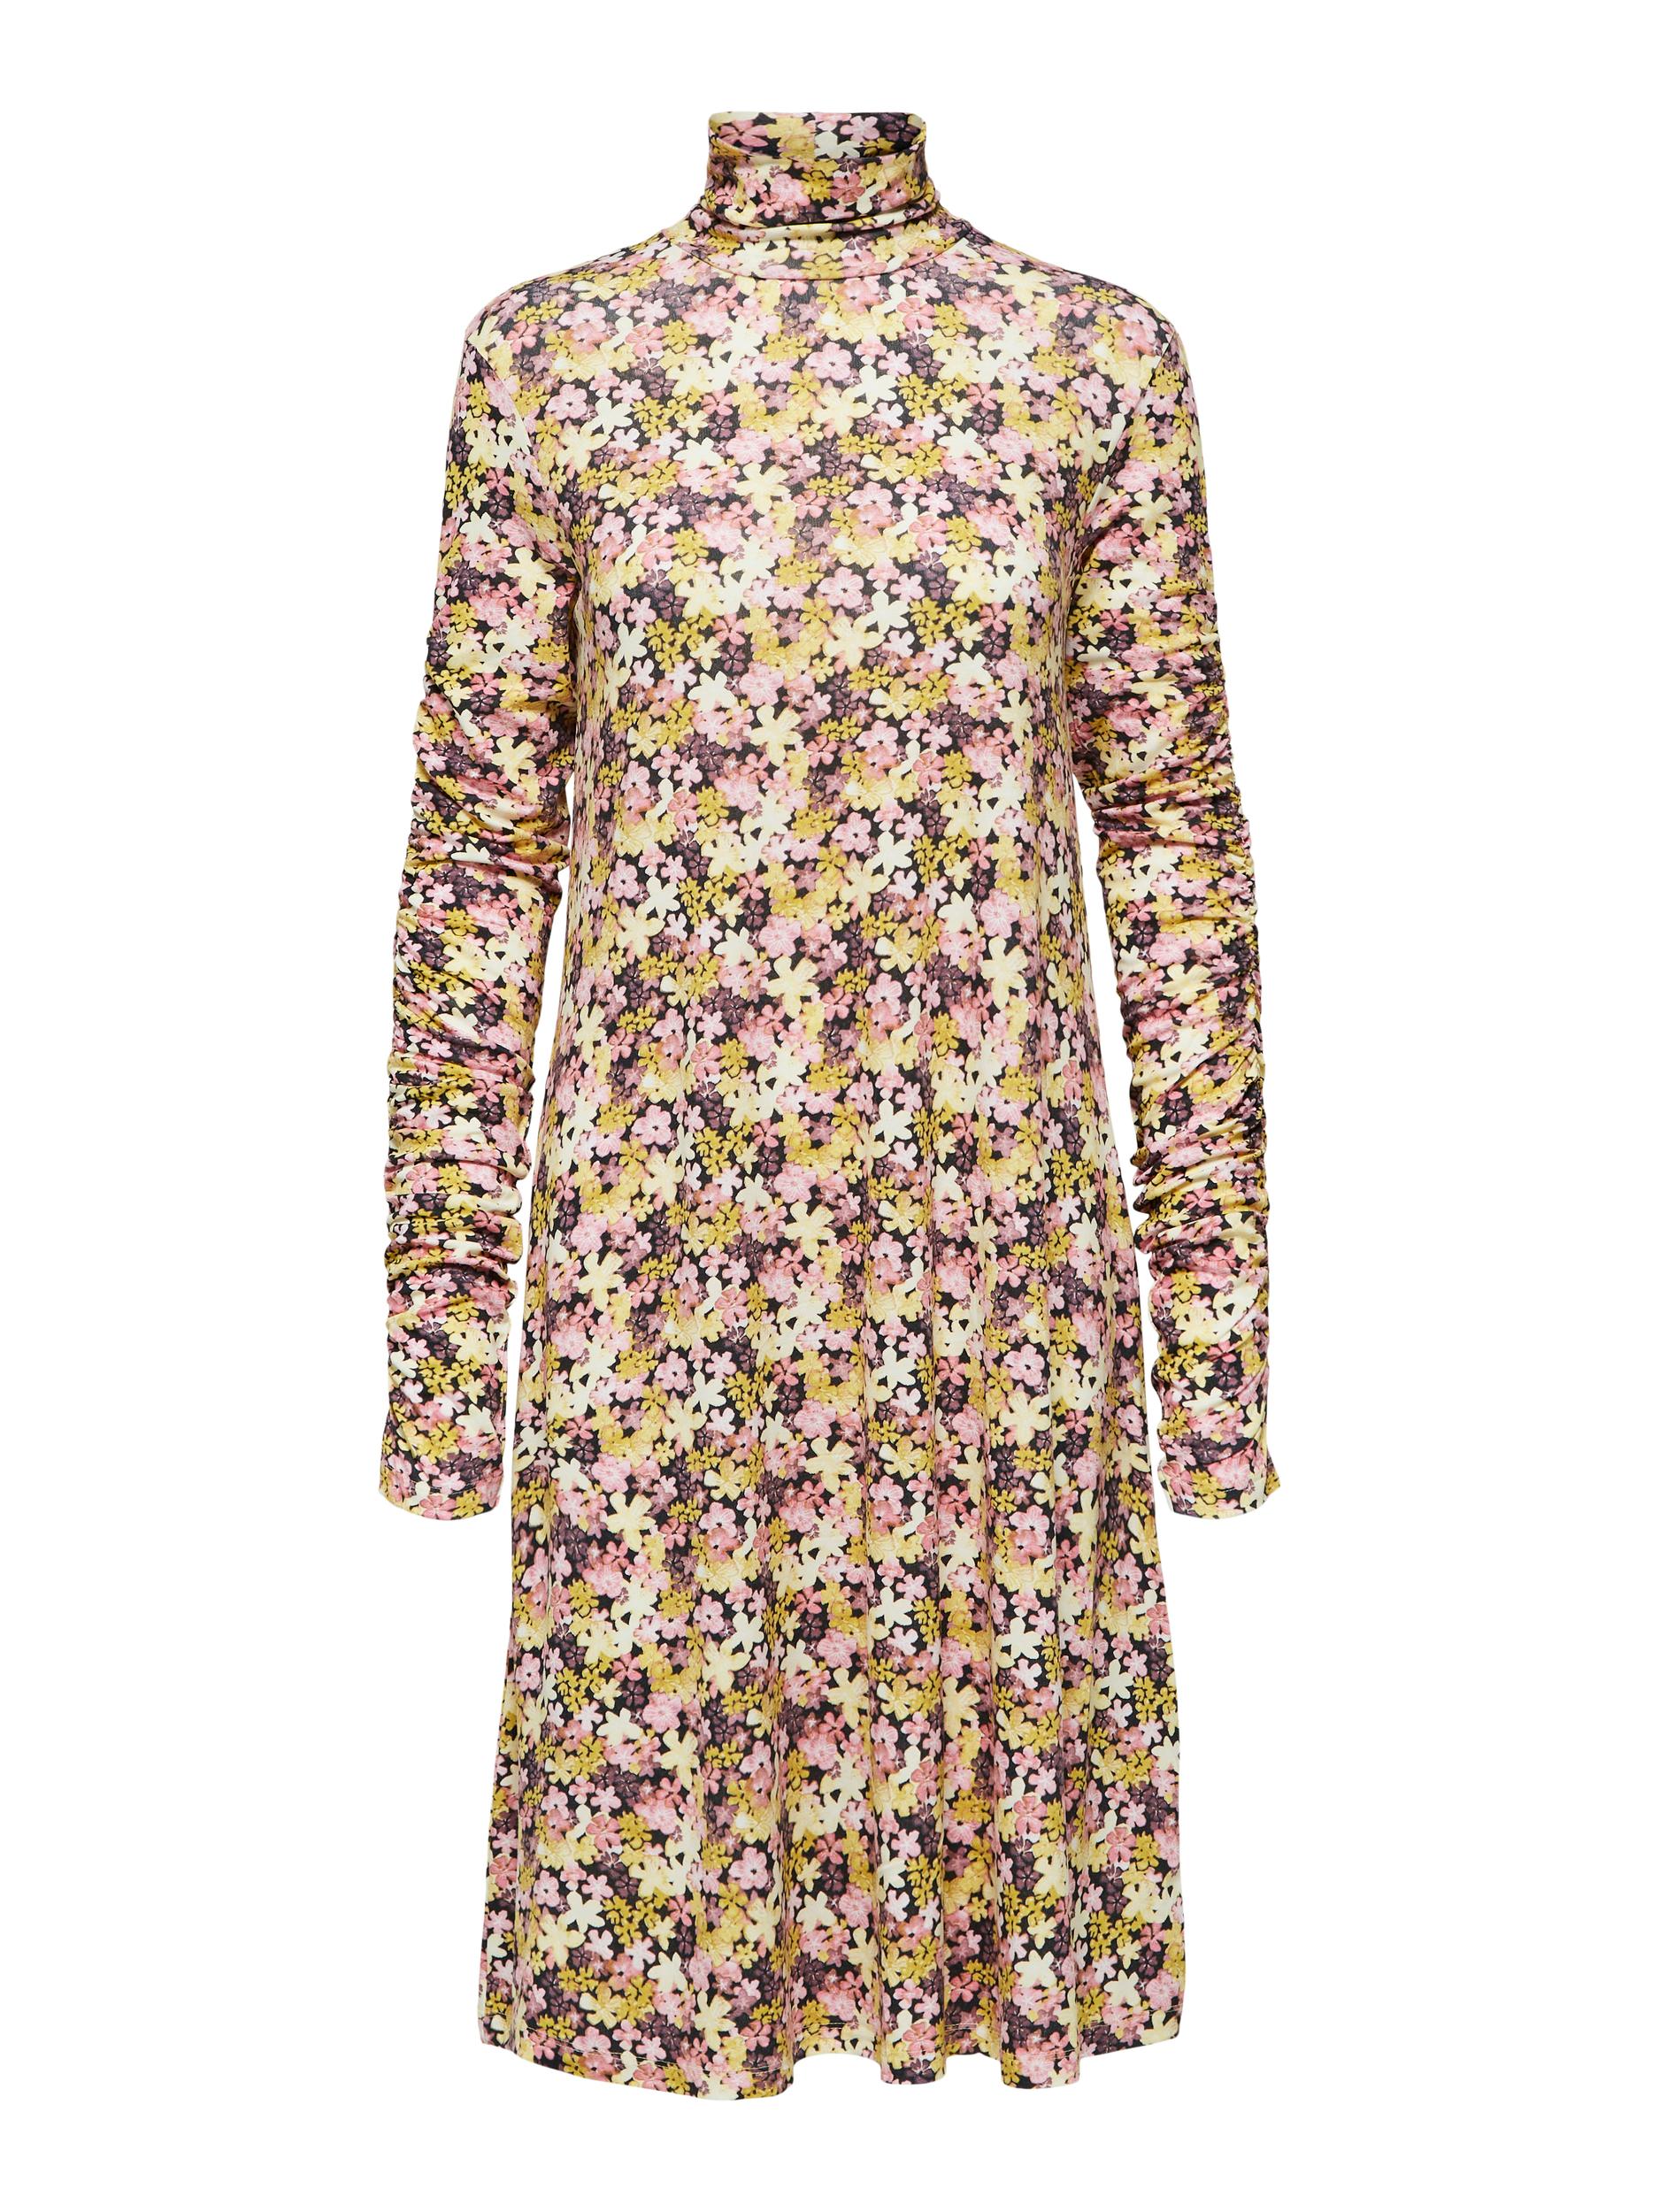 Odzież Kobiety SELECTED FEMME Sukienka Ottilia w kolorze Żółtym 